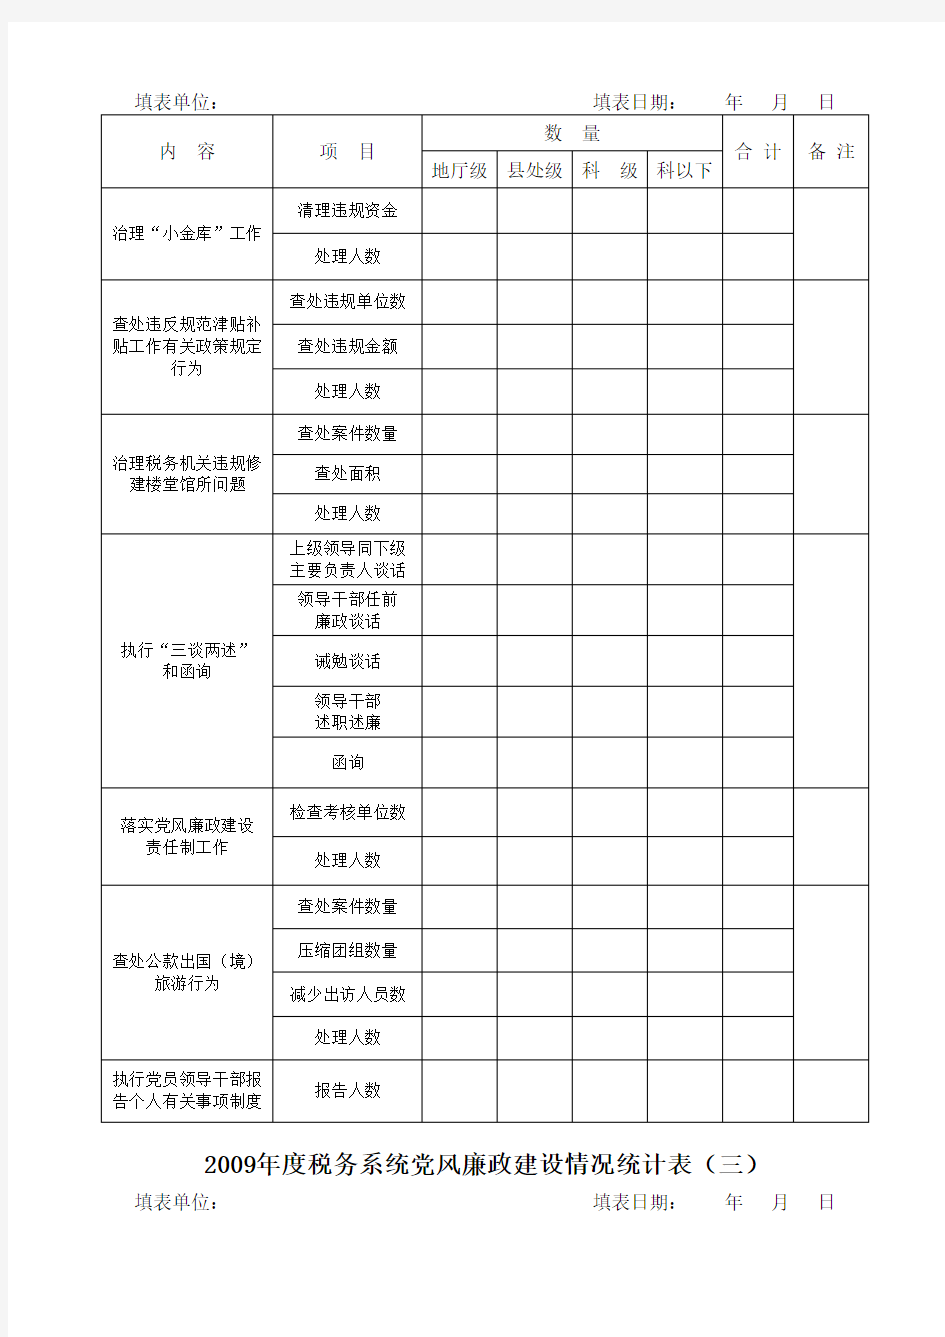 【最新】度税务系统党风廉政建设情况统计表(一)